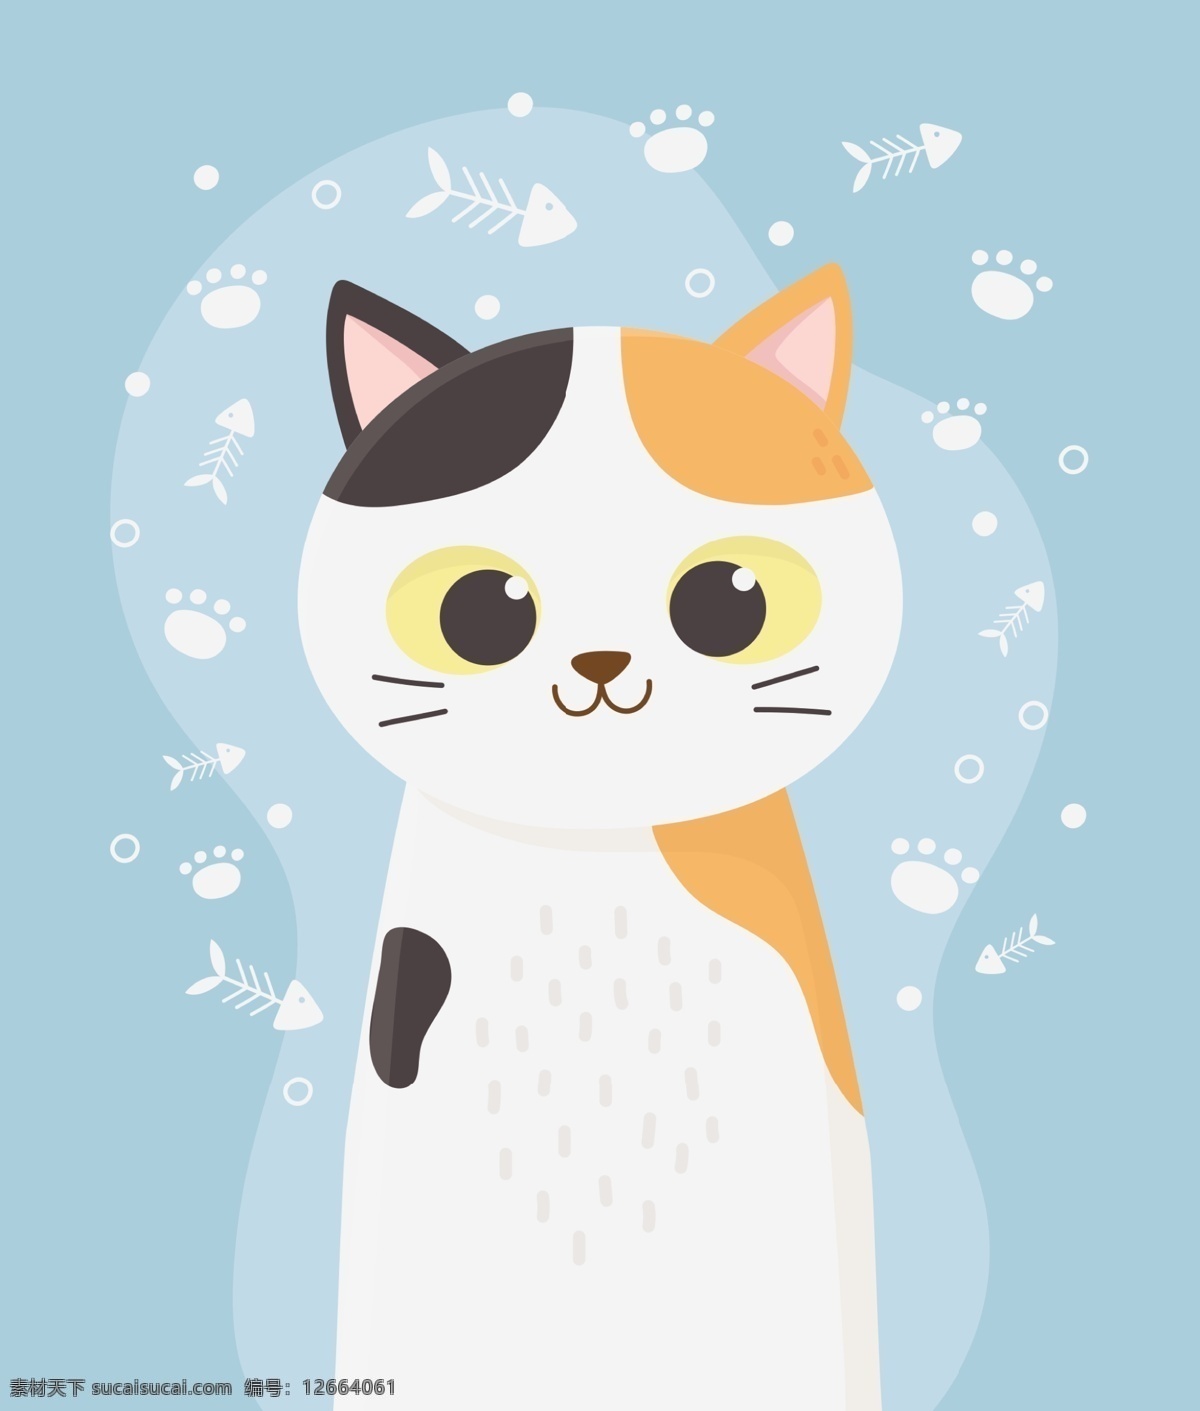 手绘卡通猫 猫 卡通猫 淡彩 可爱 卡哇伊 小猫 动物 动物素材 手绘猫 卡通设计